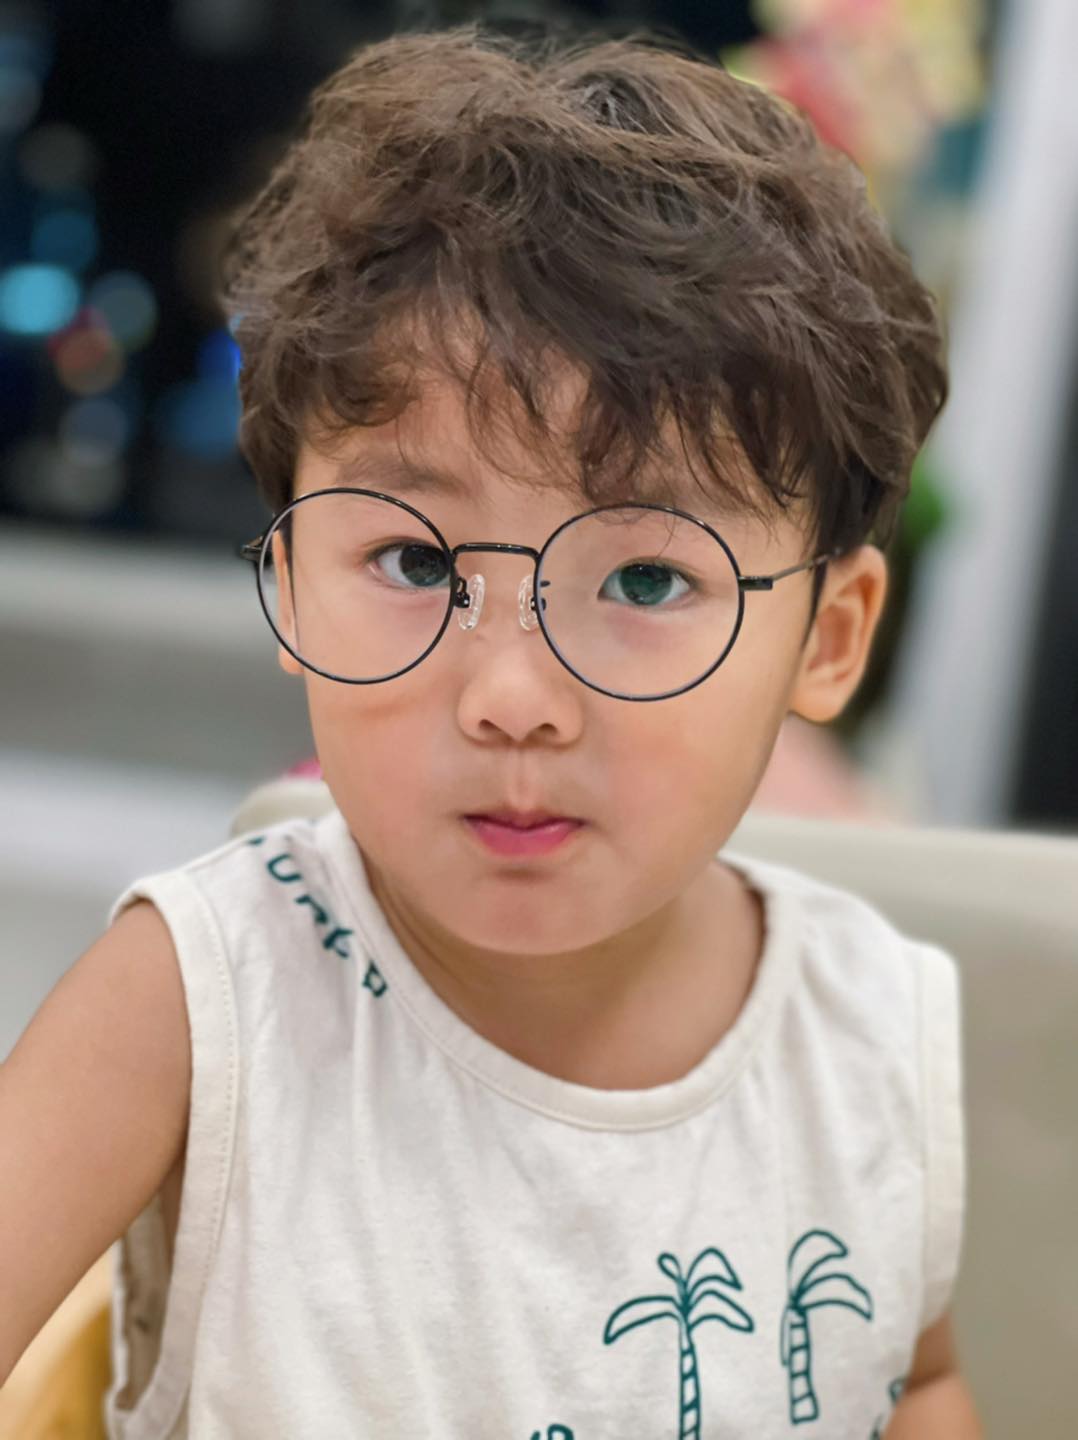 Mới 4 tuổi, con trai Hoà Minzy trả lời hiểu chuyện khi được hỏi: 'Con có biết bố với mẹ giờ như thế nào không?' - ảnh 3